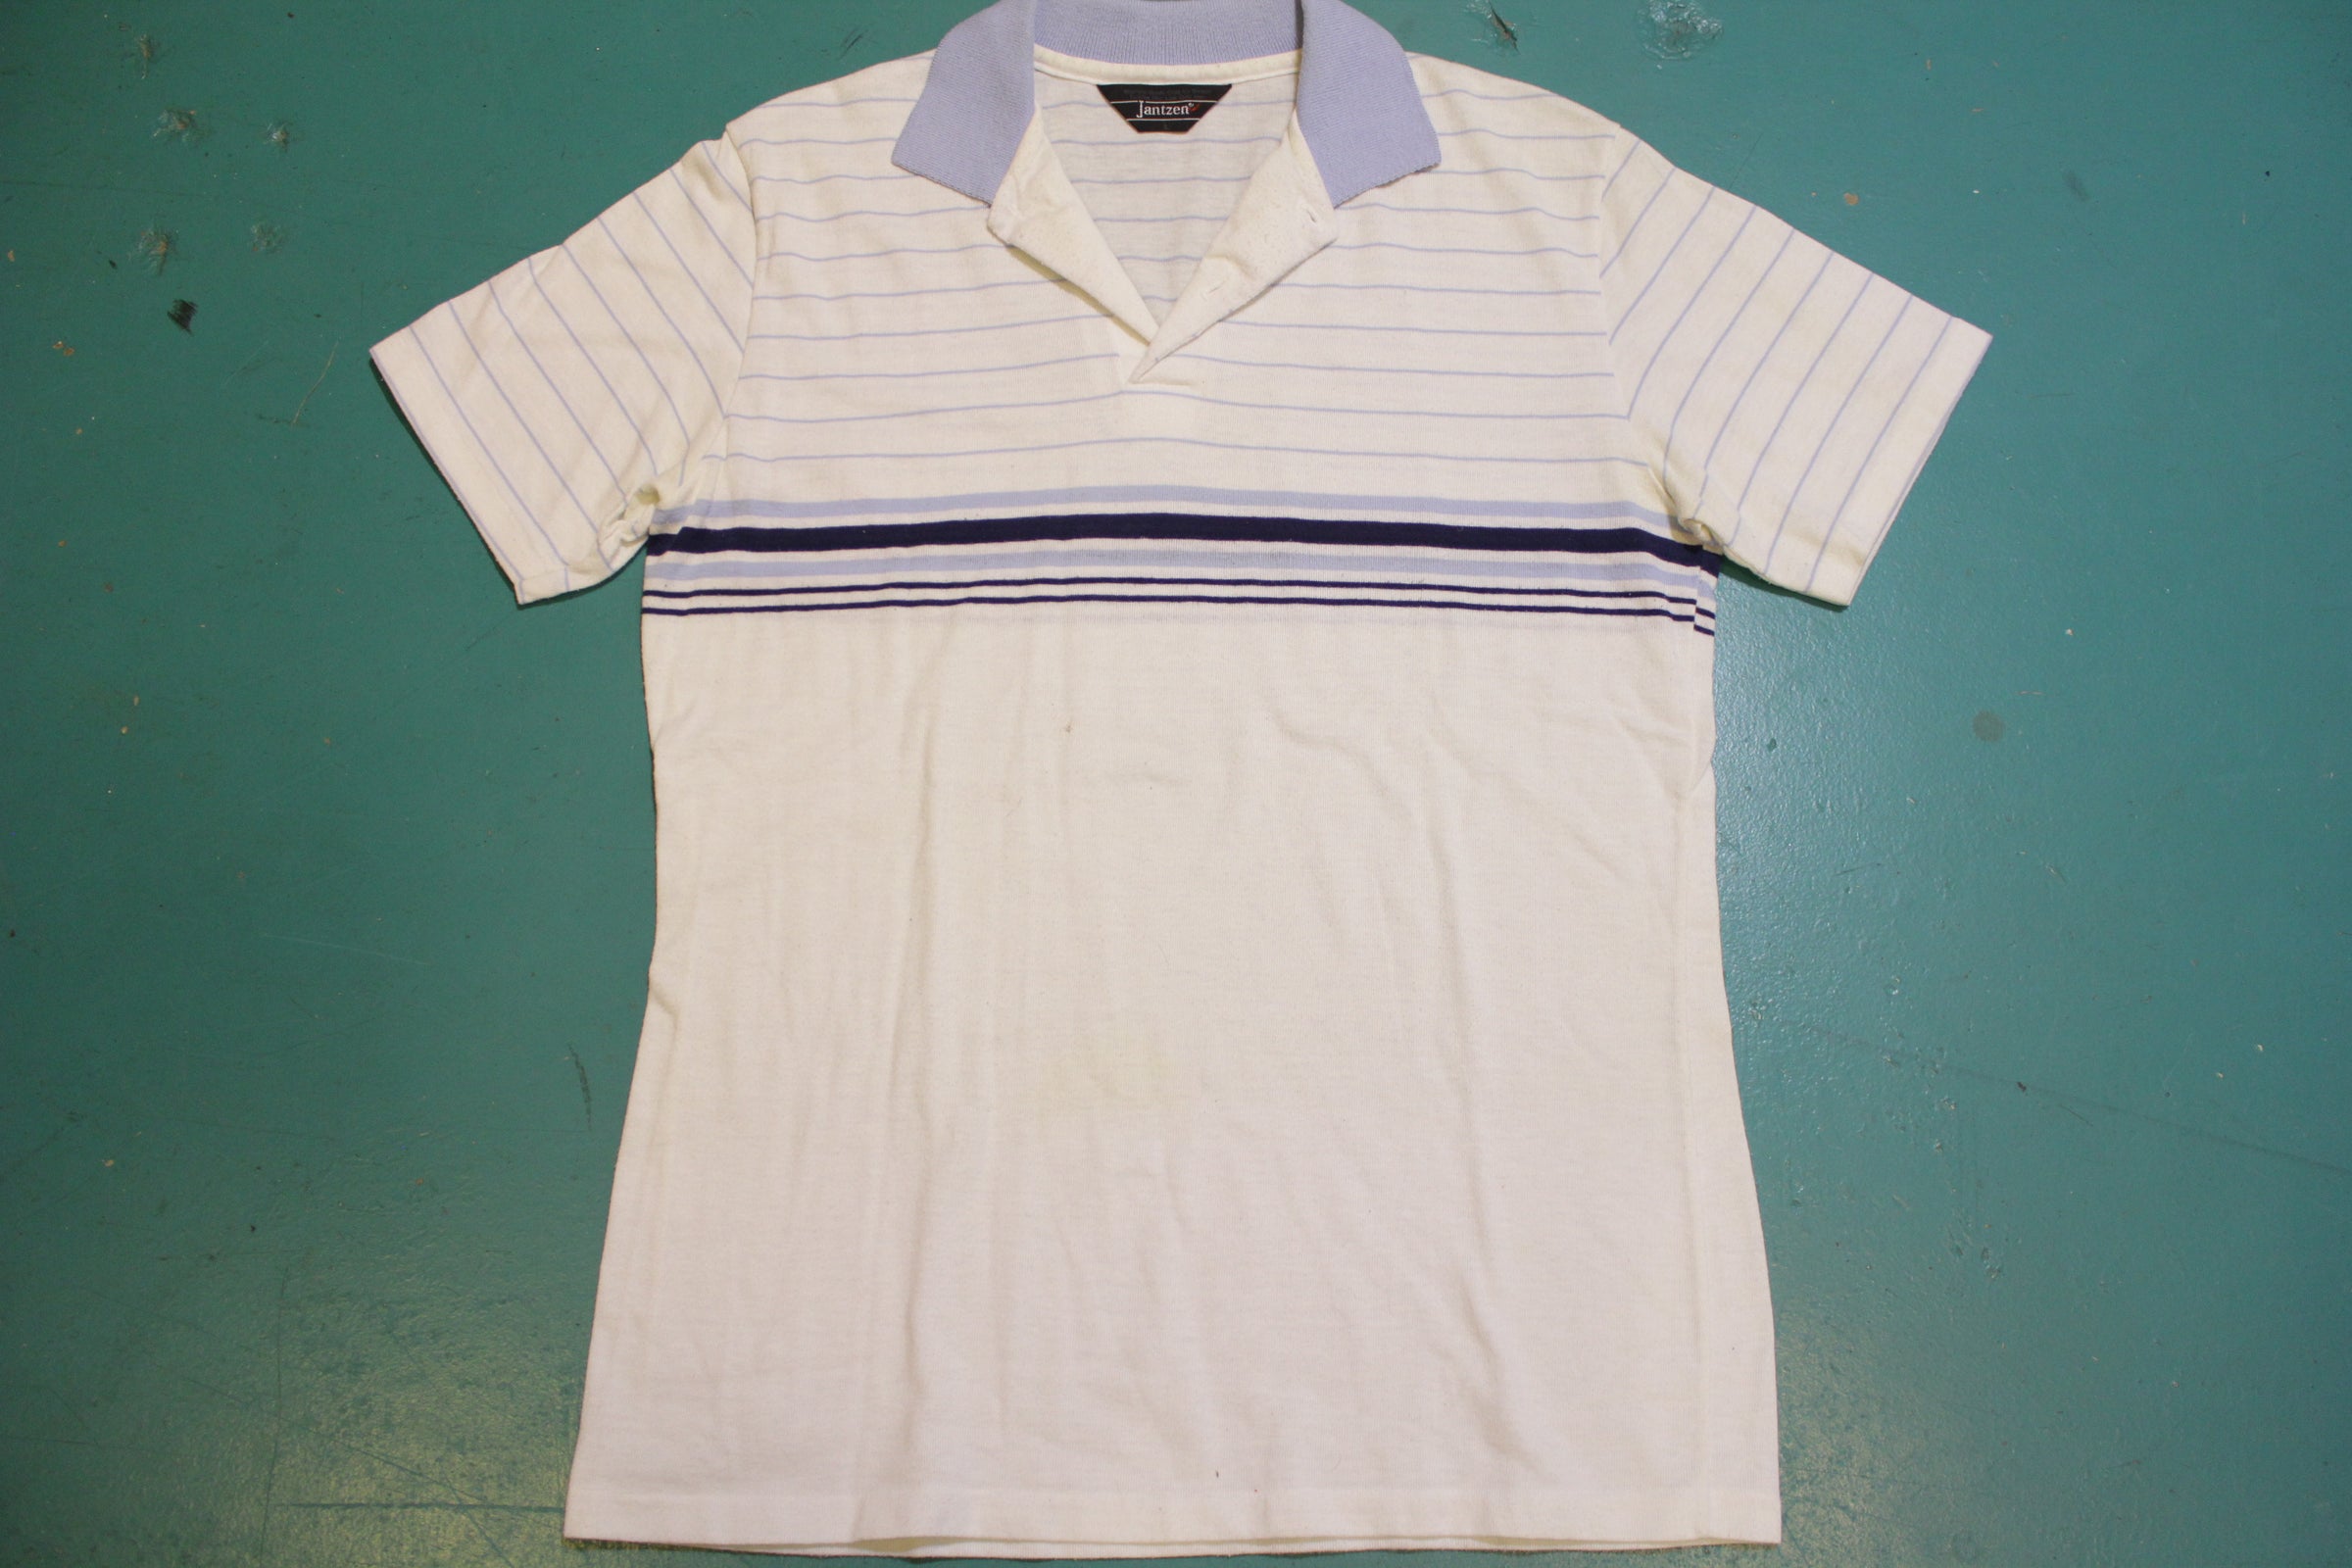 Munsingwear Penguin Deadstock Navy Blue 70's Tennis Golf Single